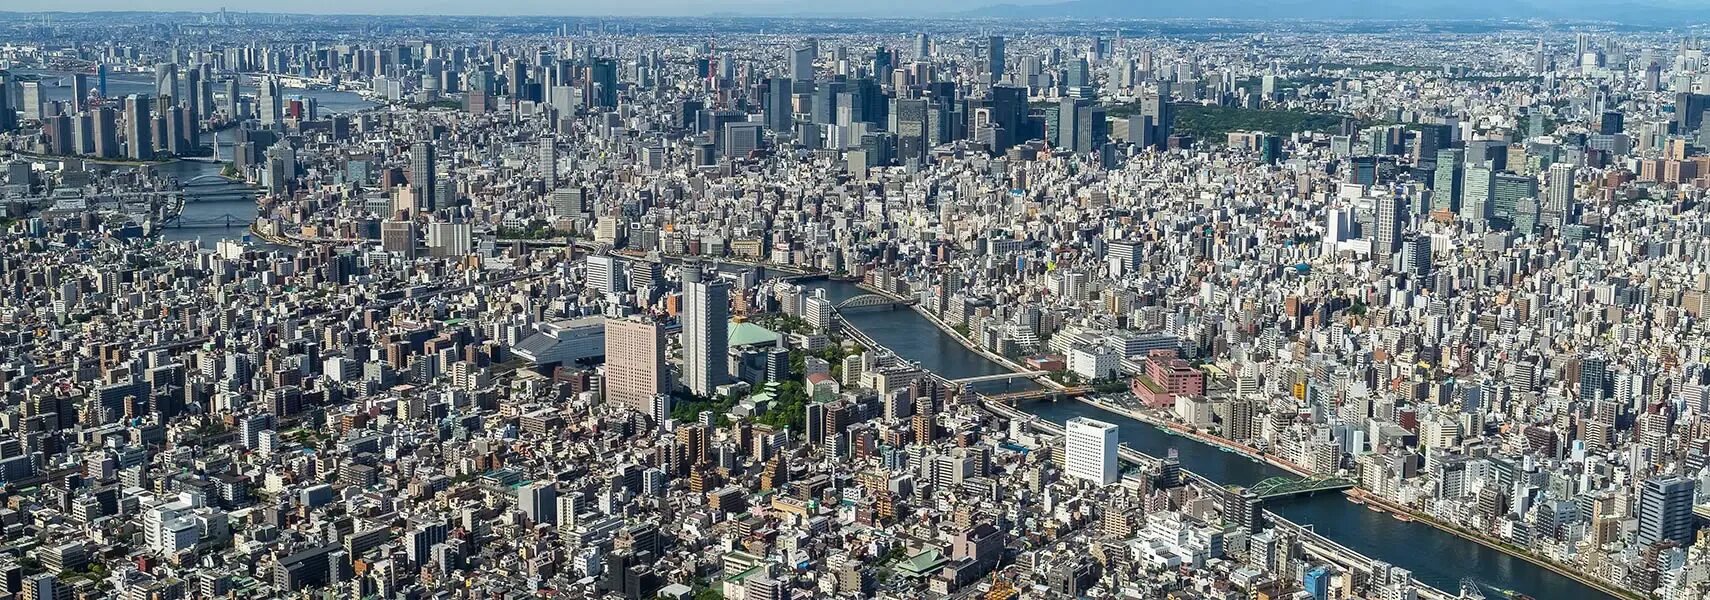 World city population. Мегалополис Токайдо. Япония Мегаполис Токайдо. Токайдо Токио Осака. Токайдо агломерация.